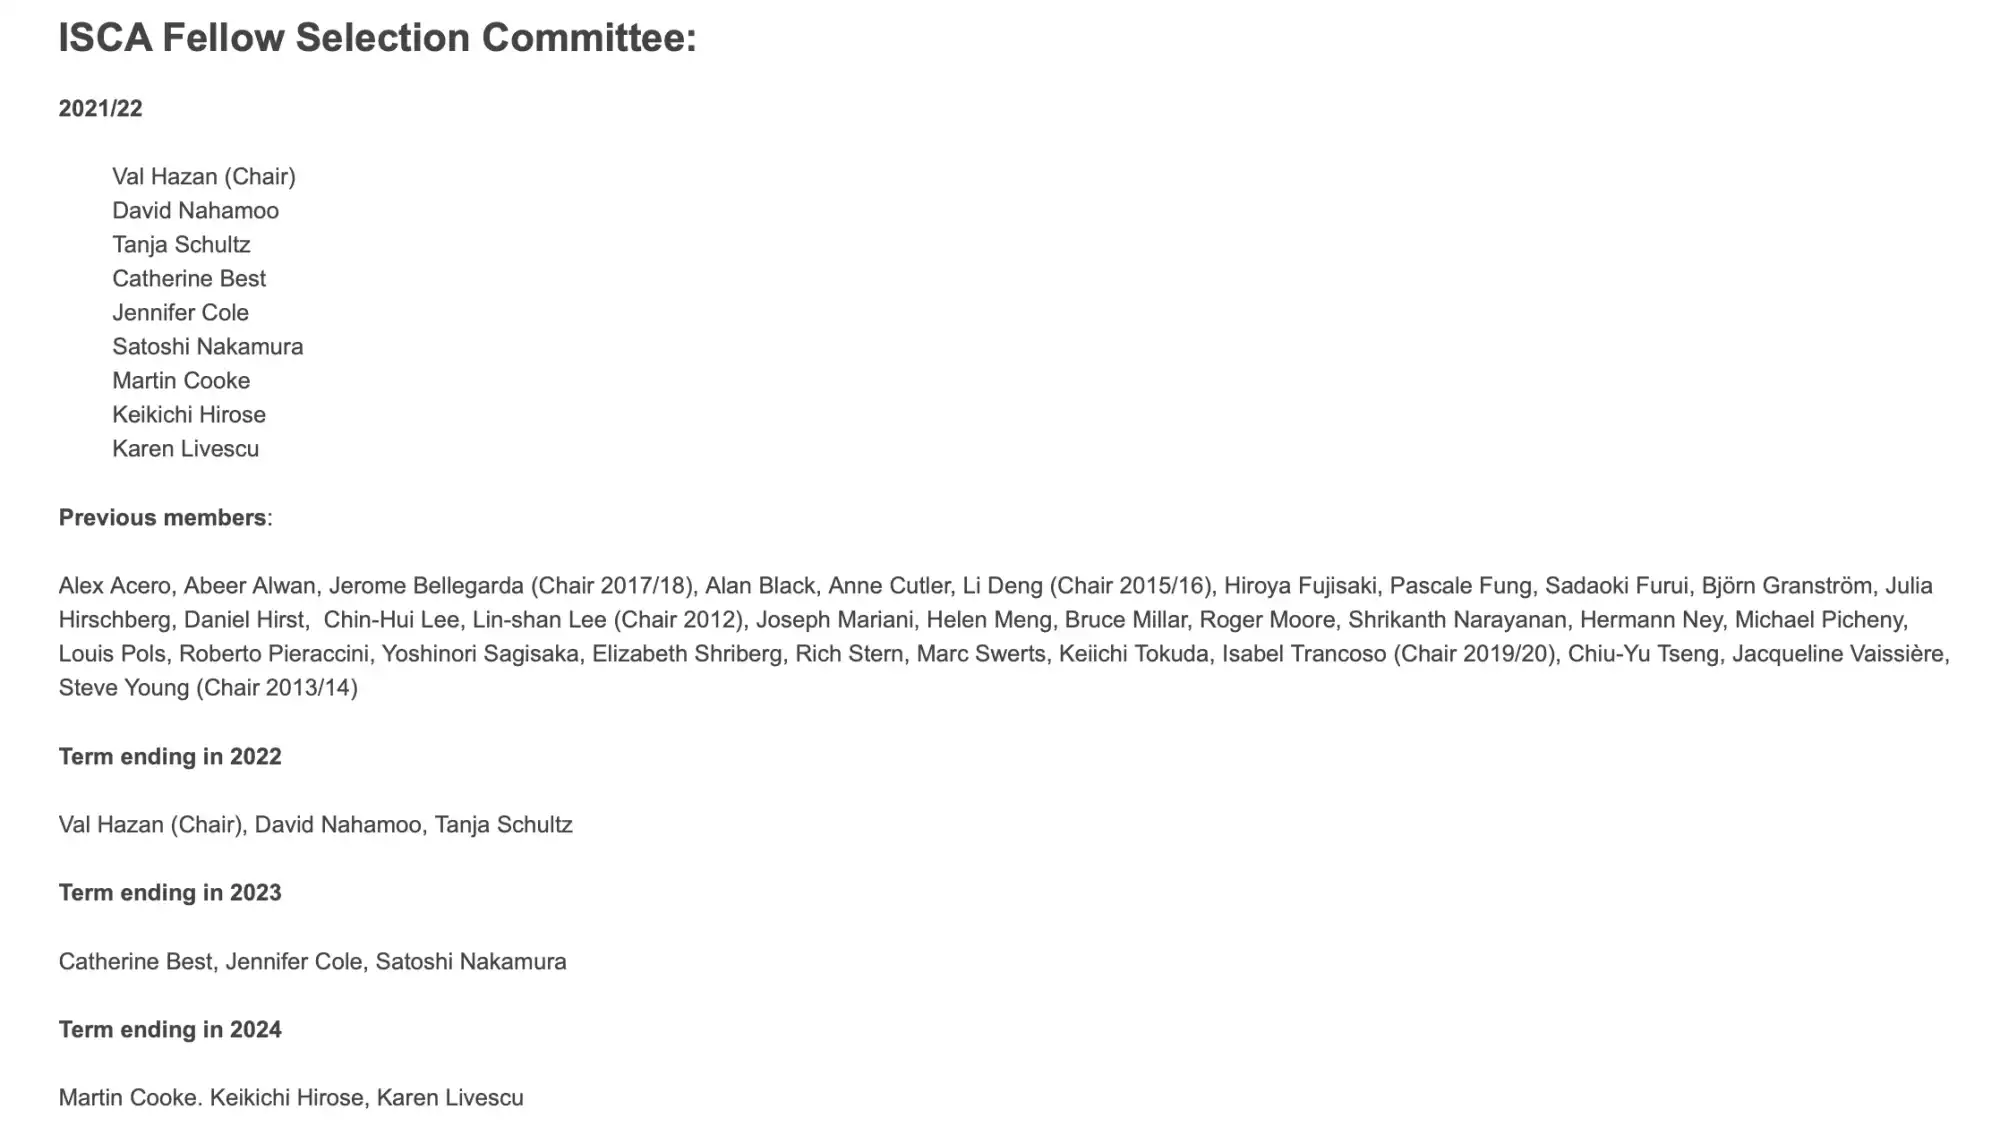 這是 ISCA 網頁在 2022 年所列的當年及之前的 Fellow Selection Committee 名單；其中提到李教授曾任該委員會委員，並在 2012 年擔任主席。